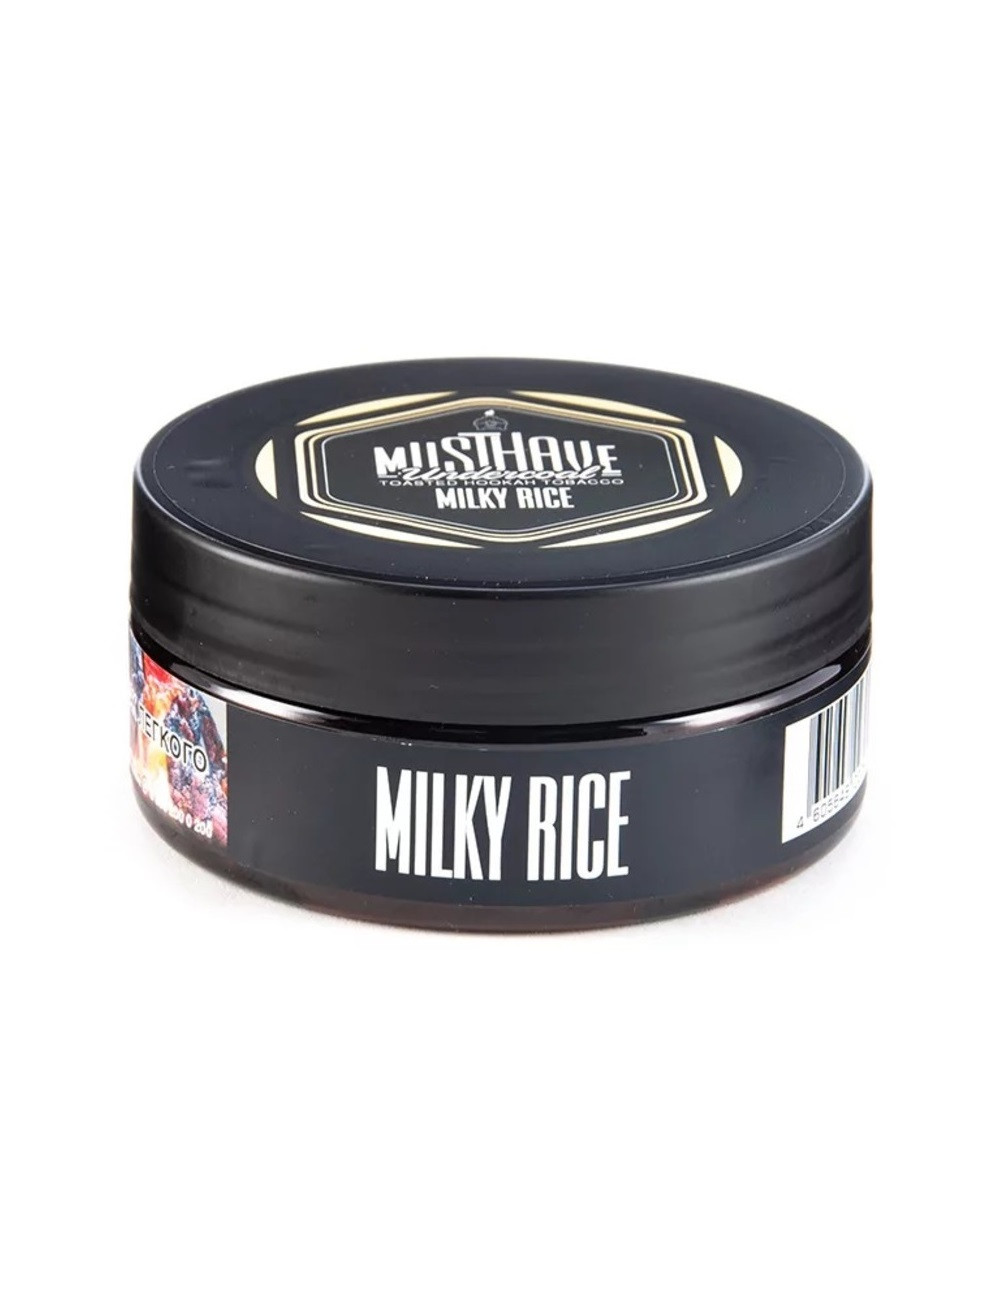 Milky rice